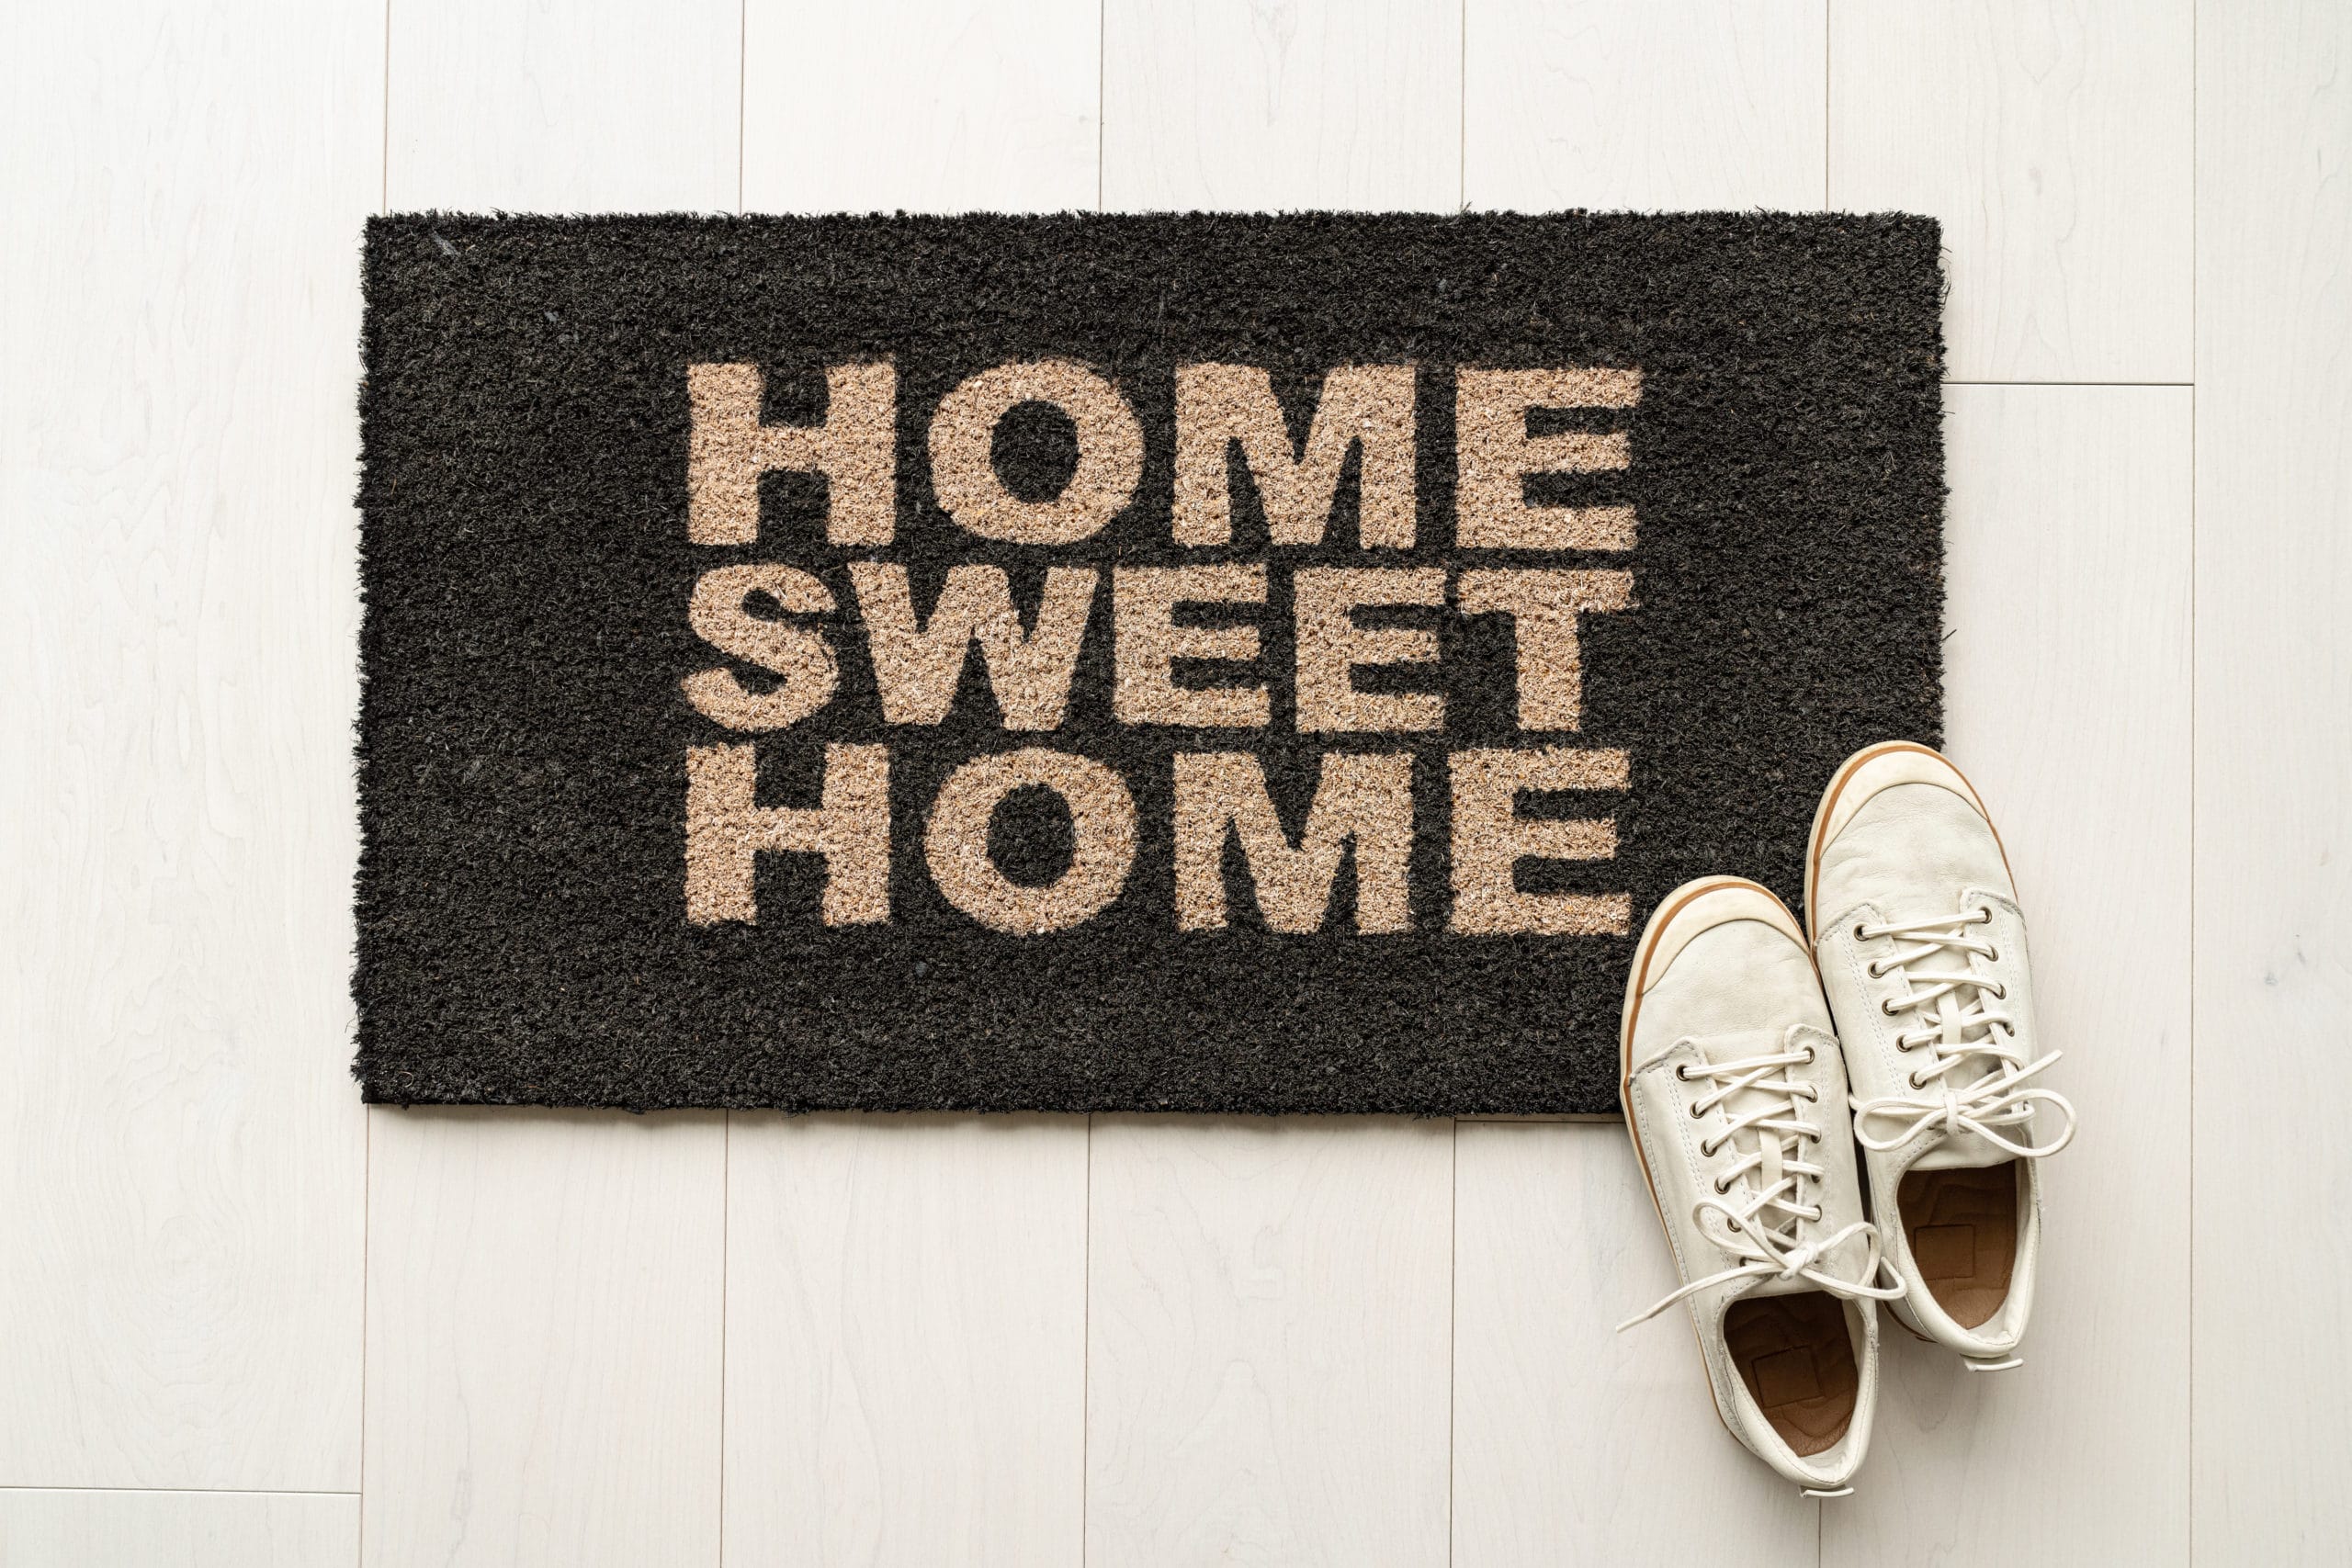 Just arrived home. Обувь на коврике темном. Тапочки на коврике Shutterstock. Home Sweet Home. Happy Home одежда.